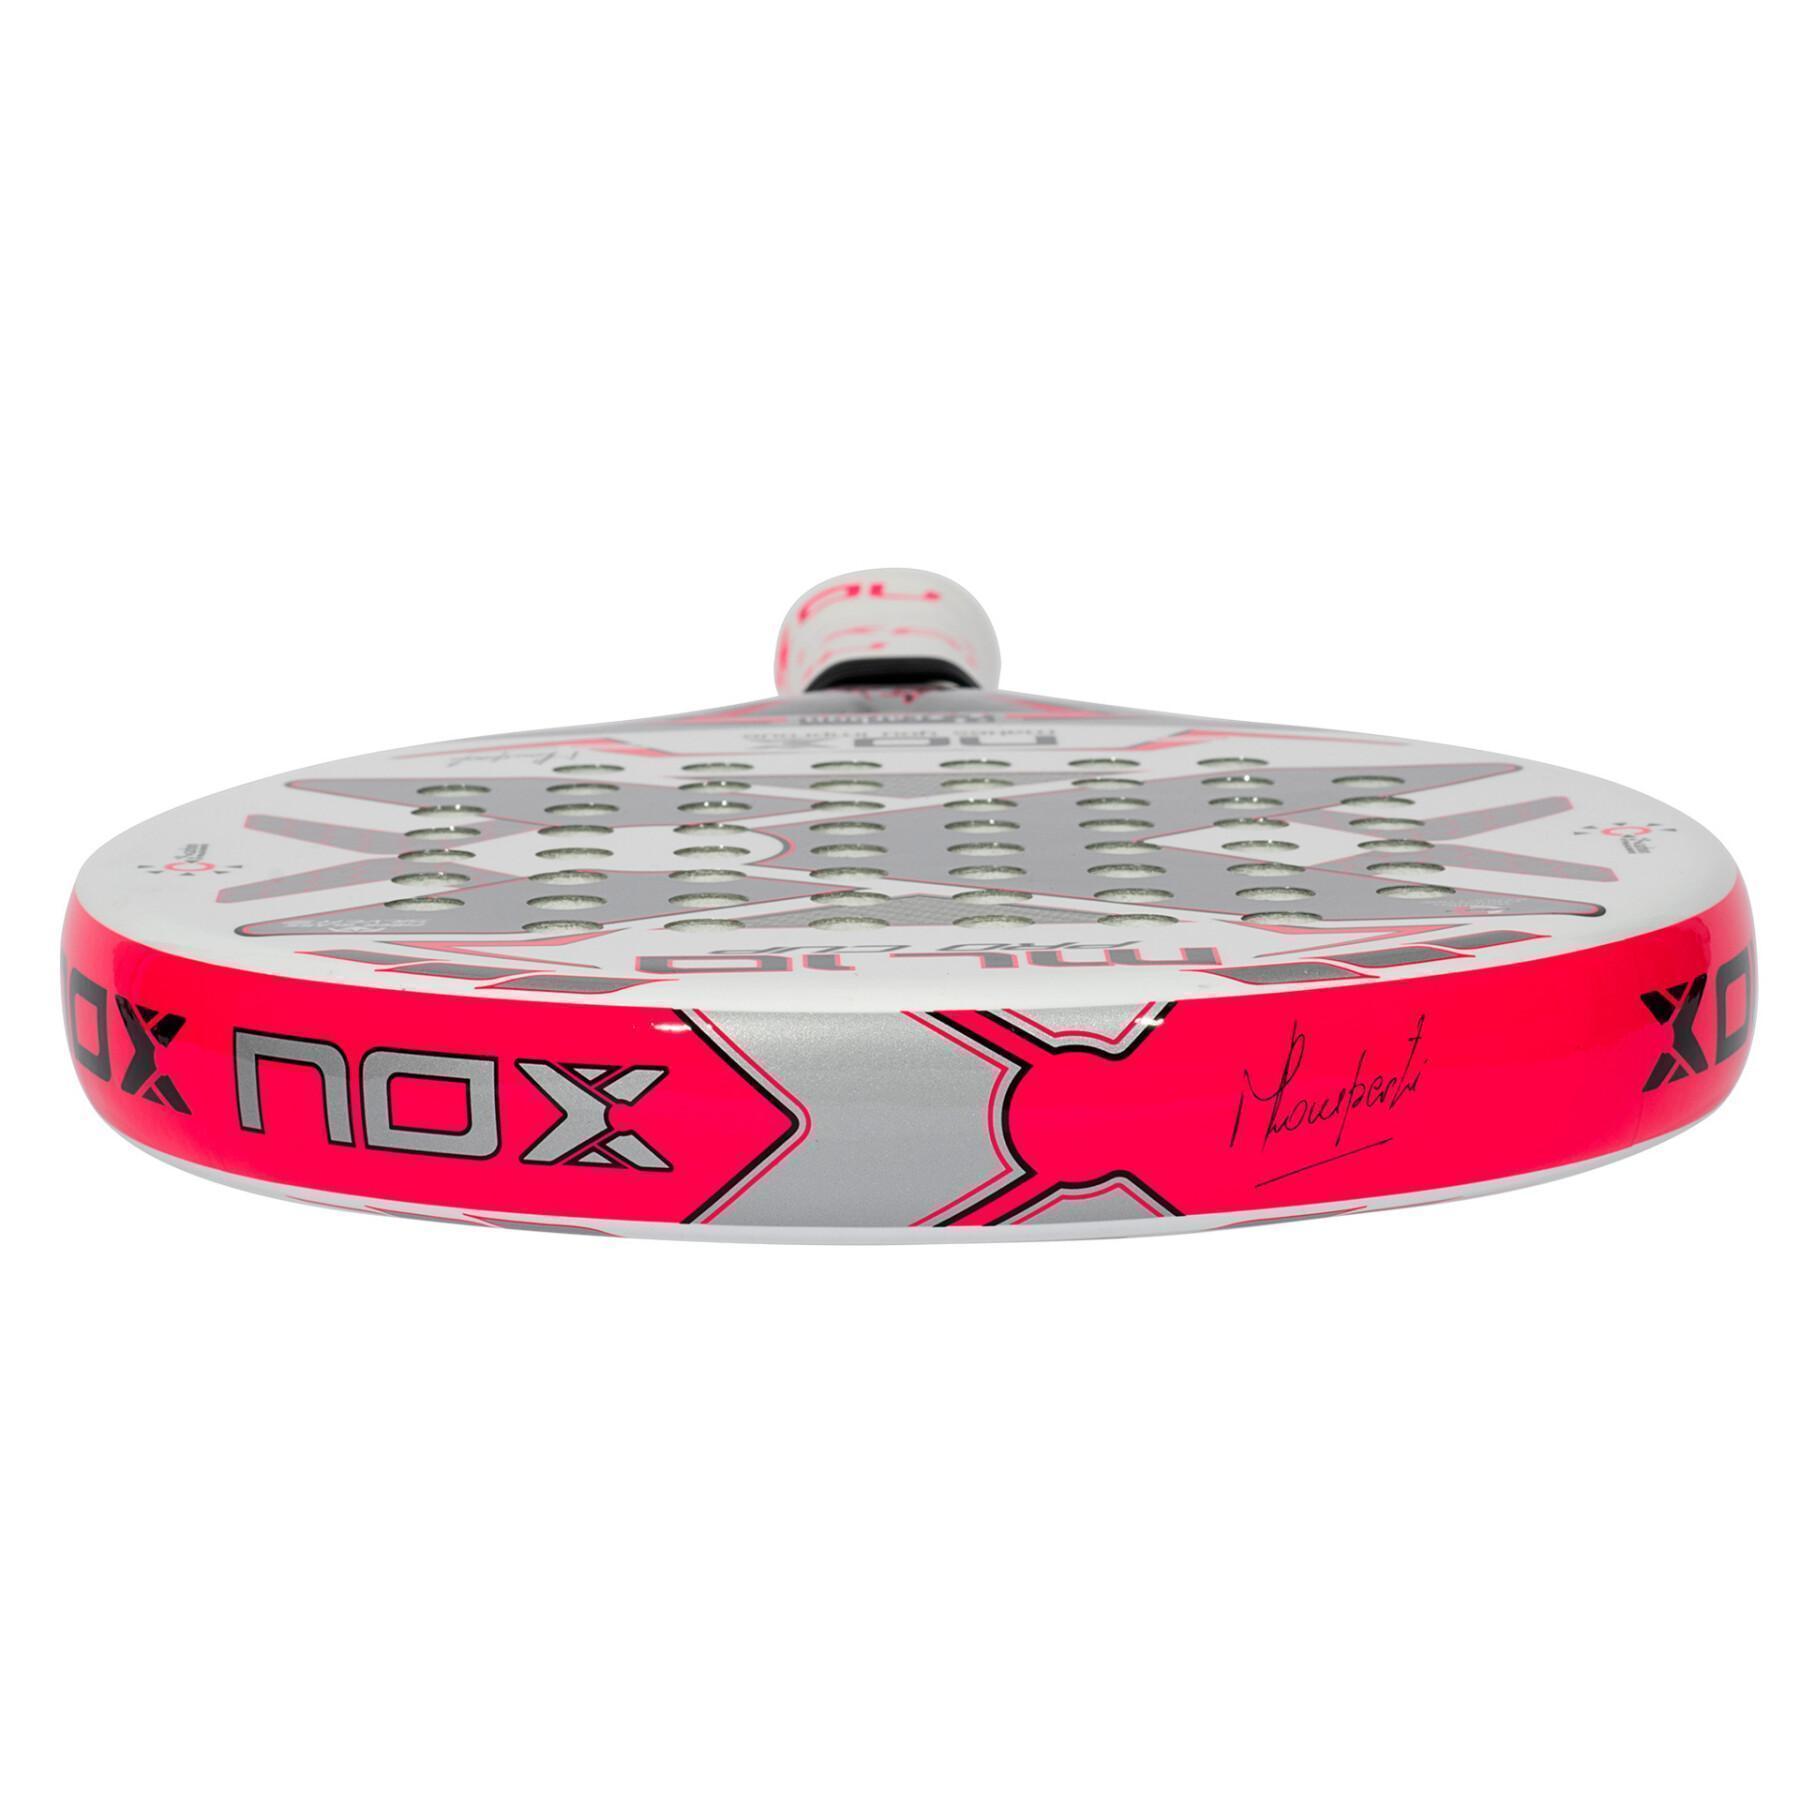 Racket Nox ML10 Pro Cup Silver